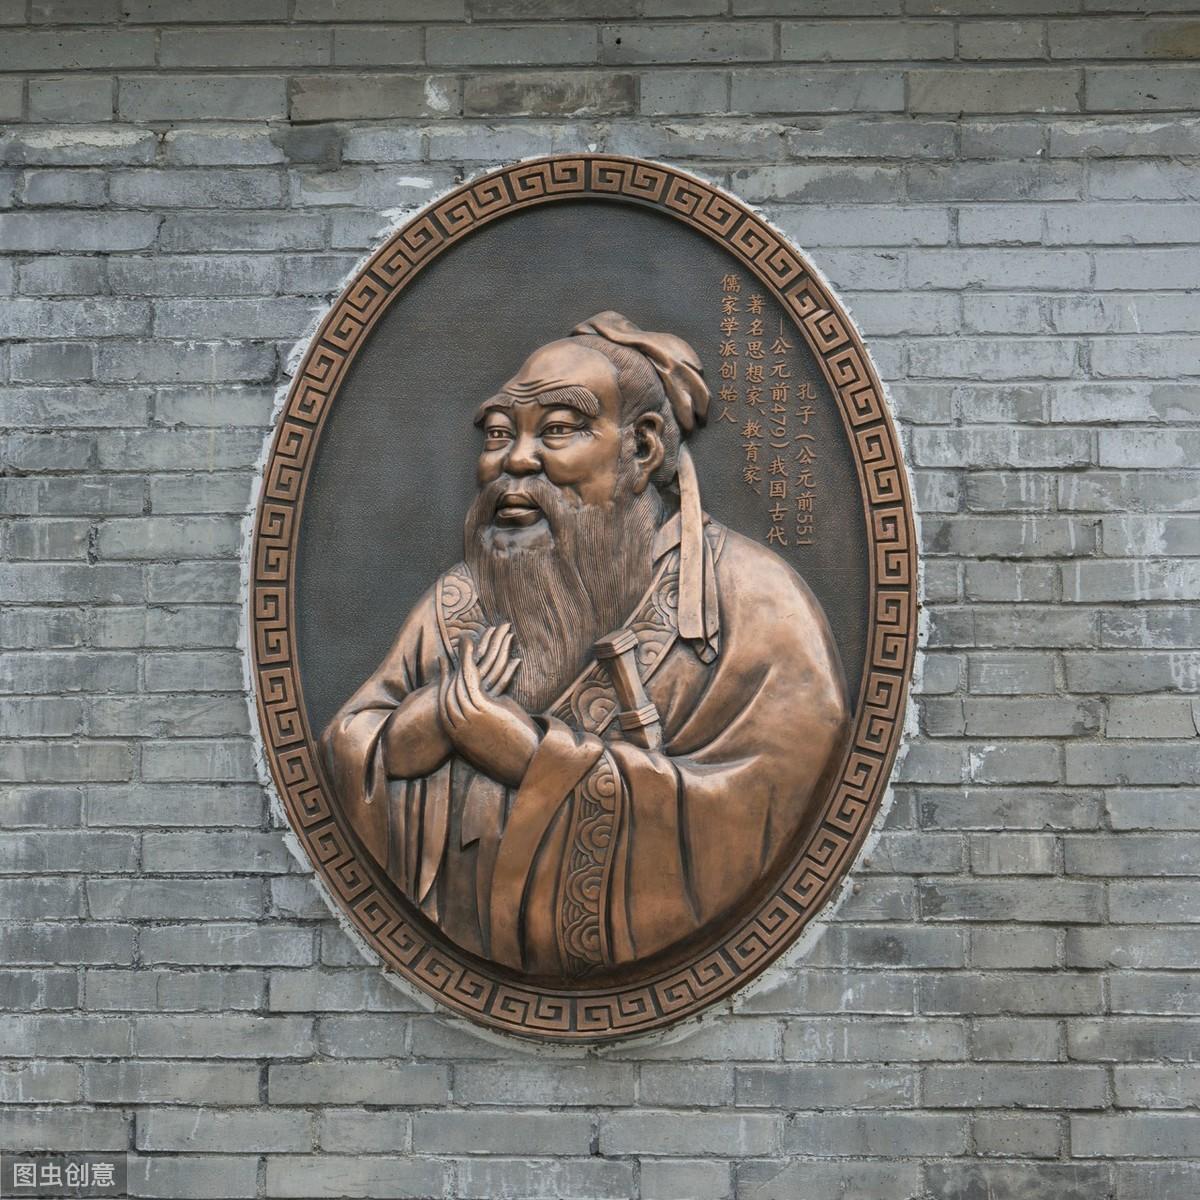 国学经典的核心哲理思想——中国古哲人老子、孔子所称谓的“德”